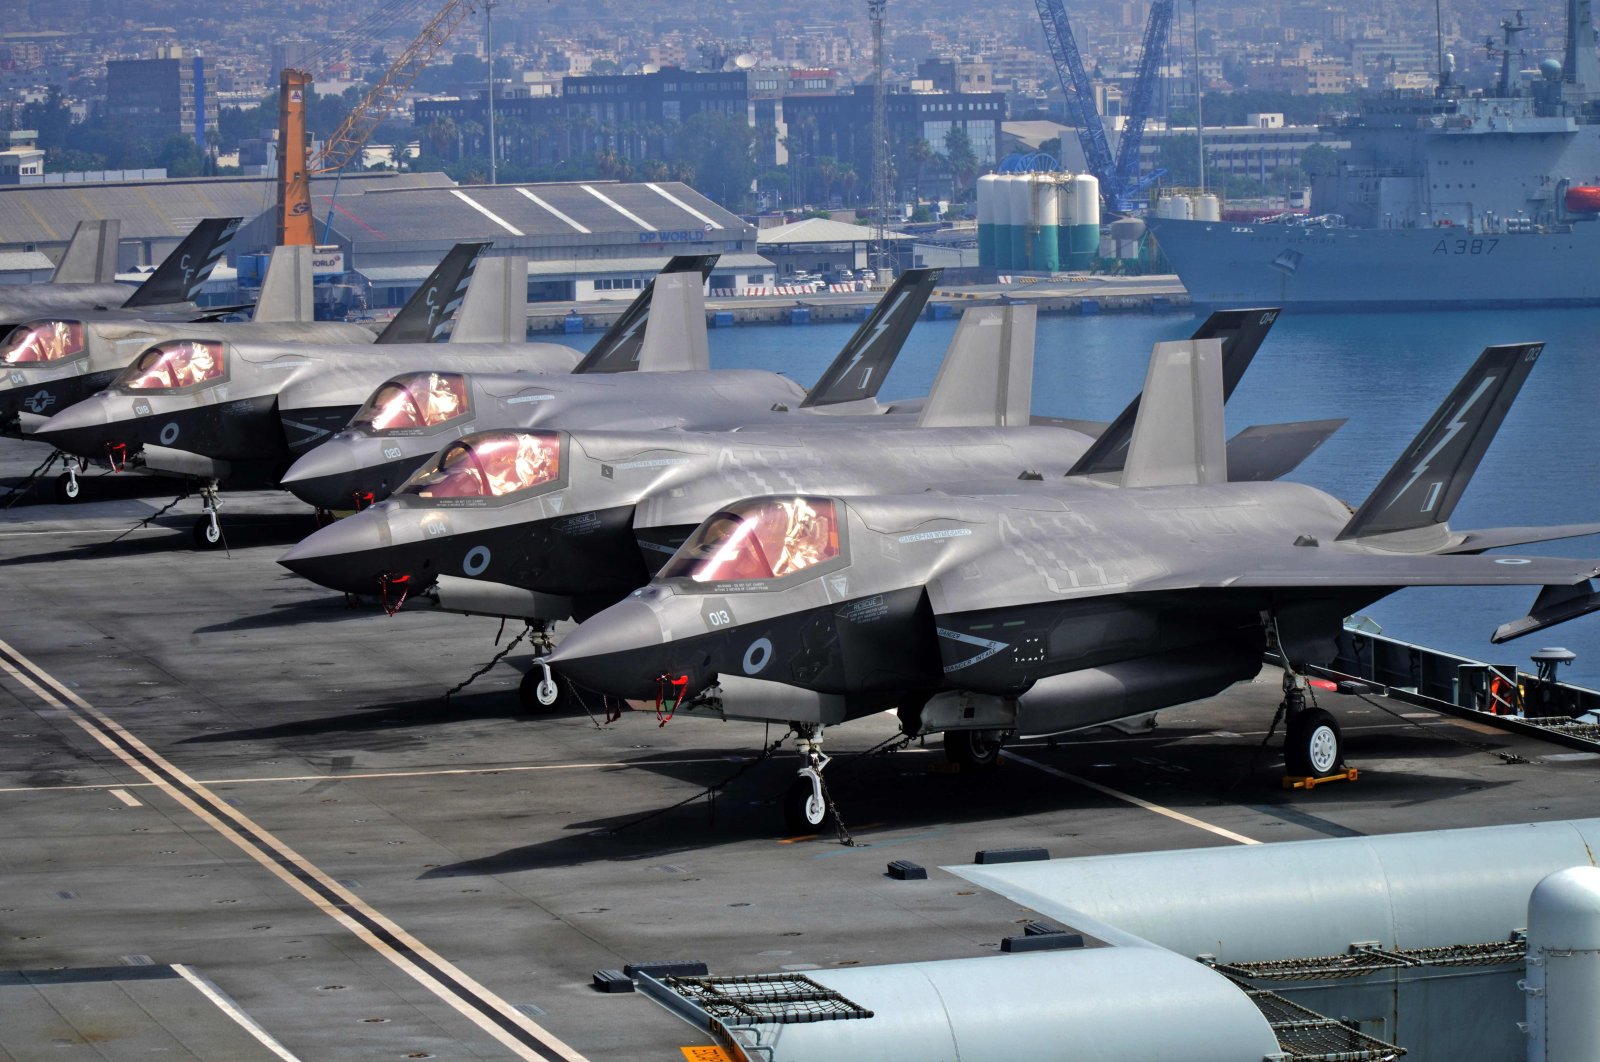 AS siap melanjutkan penjualan F-35 setelah ancaman penarikan UEA